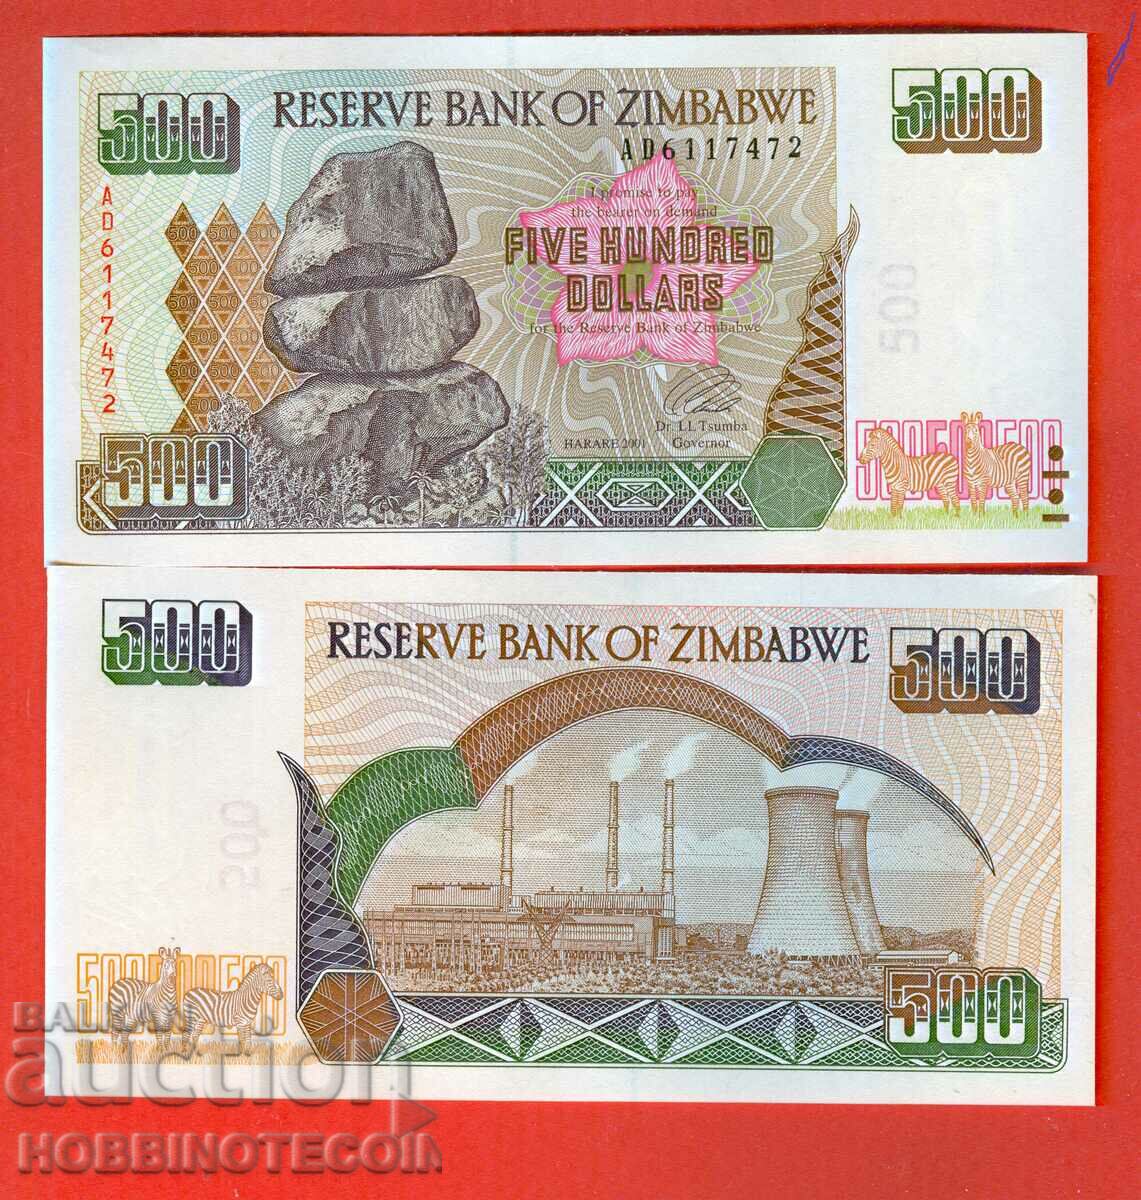 ZIMBABWE ZIMBABWE emisiune de 500 USD - emisiune 2001 NOU UNC